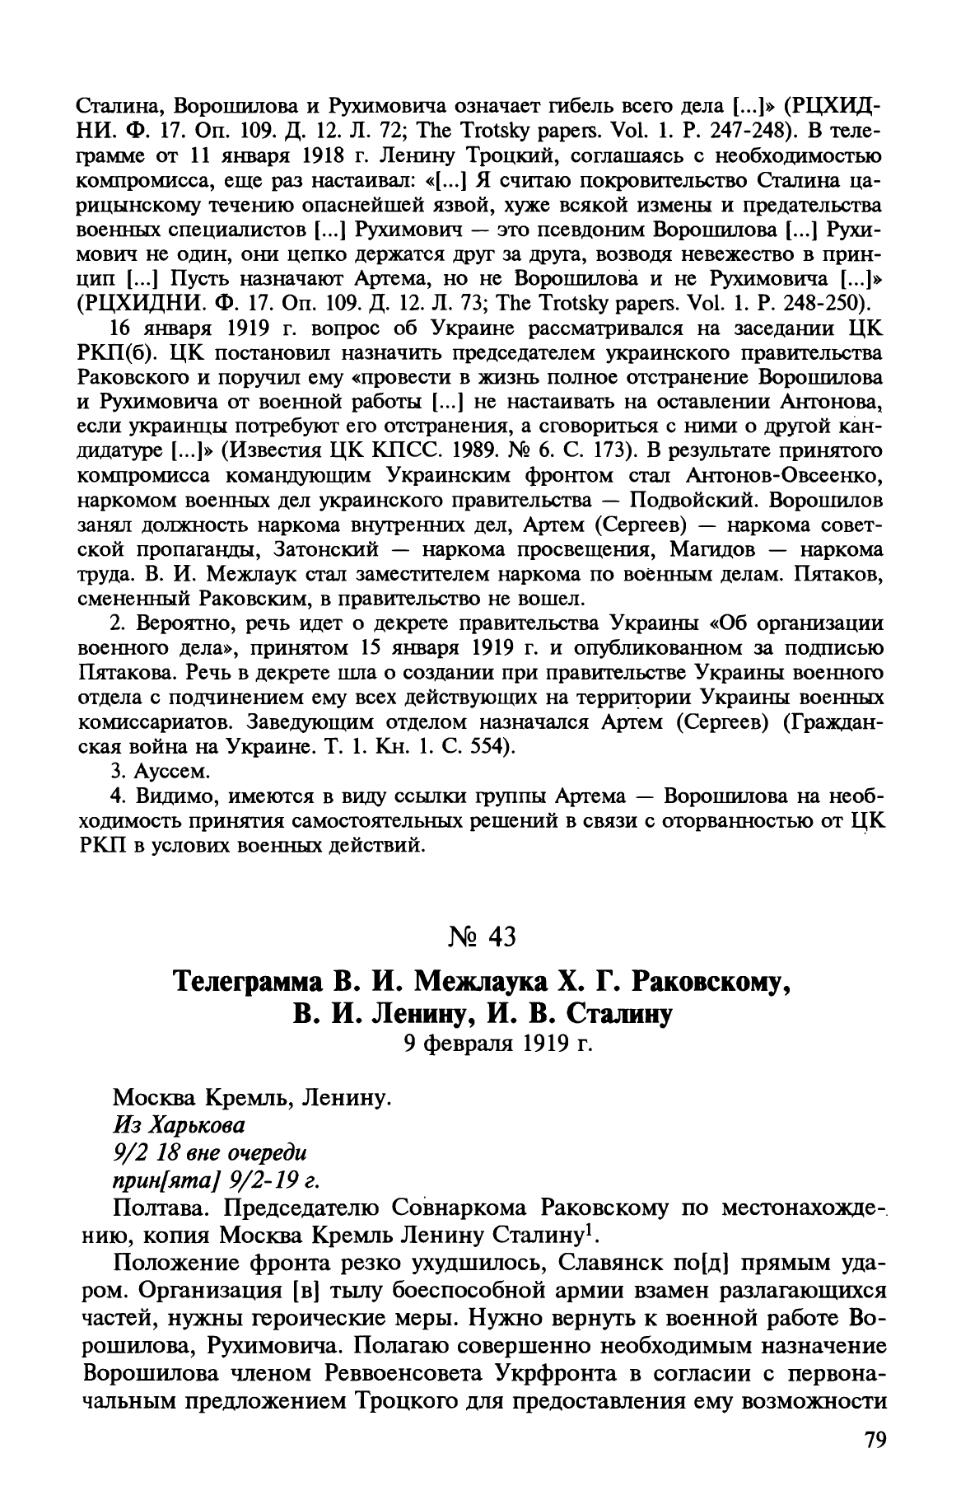 43. Телеграмма В. И. Межлаука X. Г. Раковскому, В. И. Ленину, И. В. Сталину. 9 февраля 1919 г.